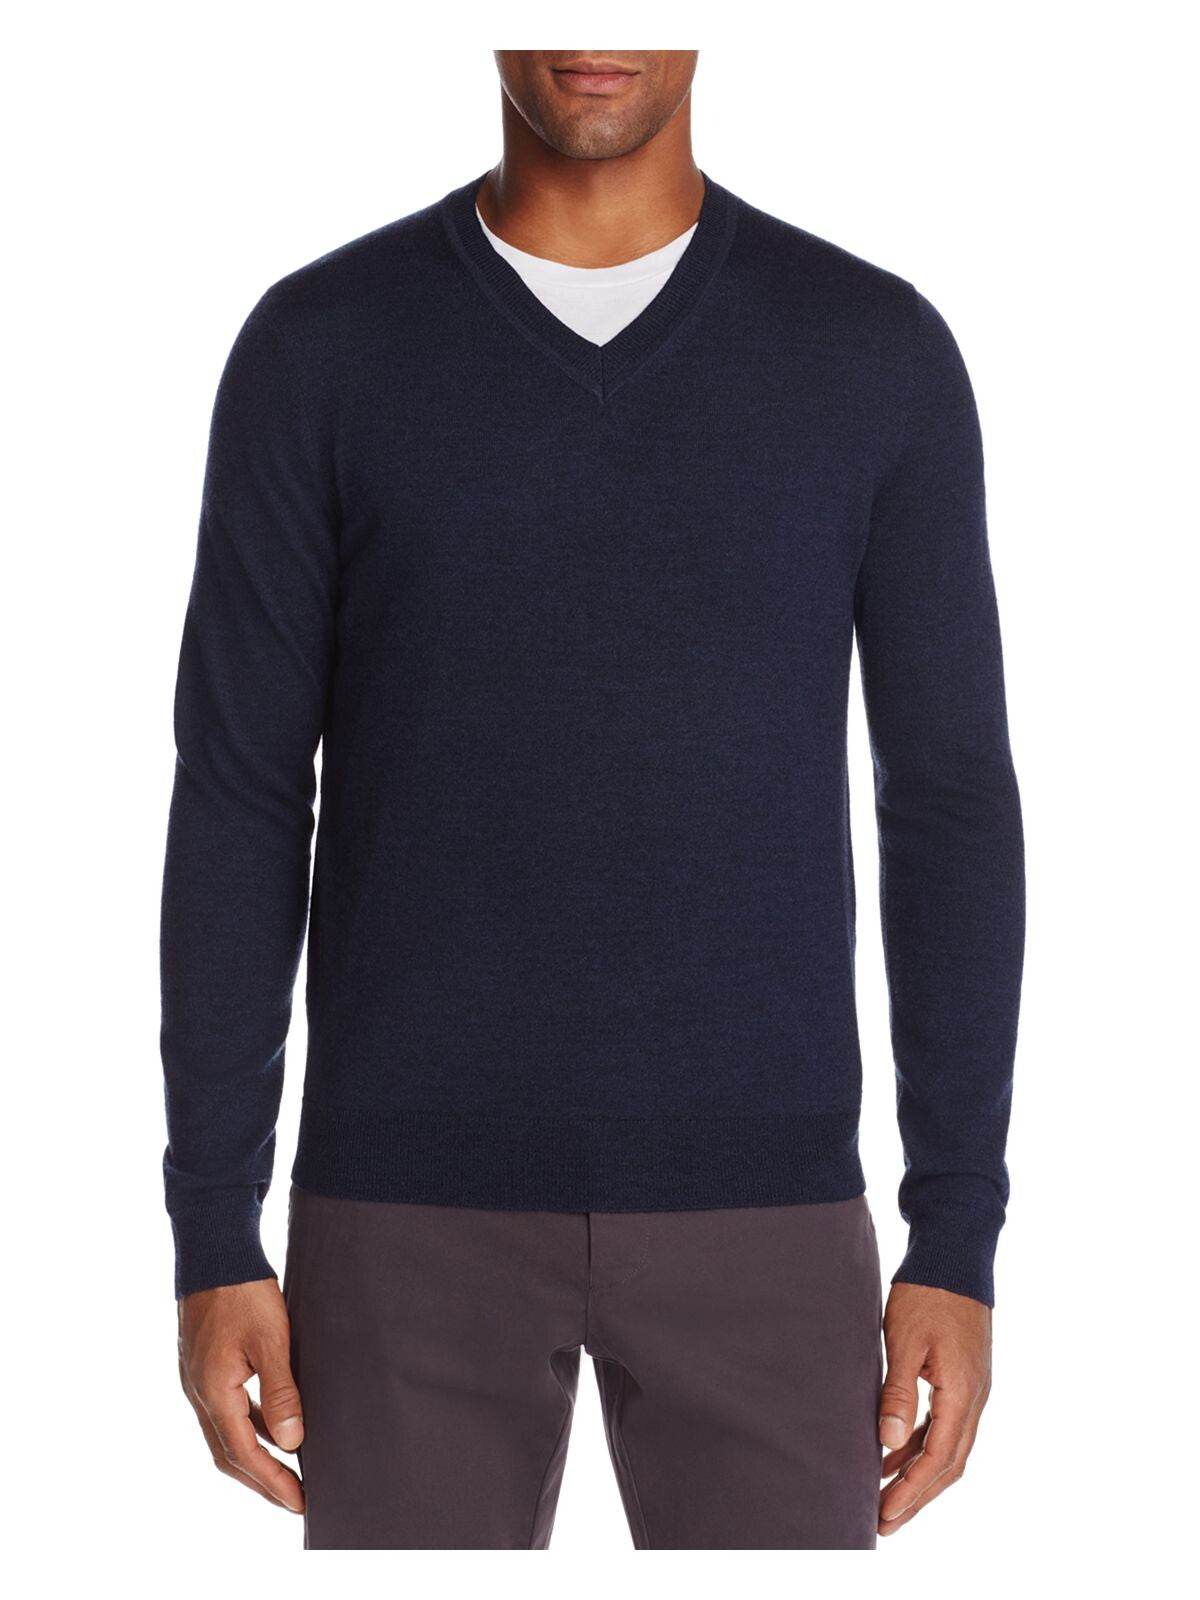 THE MENS STORE Mens Blue V Neck Merino Blend Pullover Sweater M